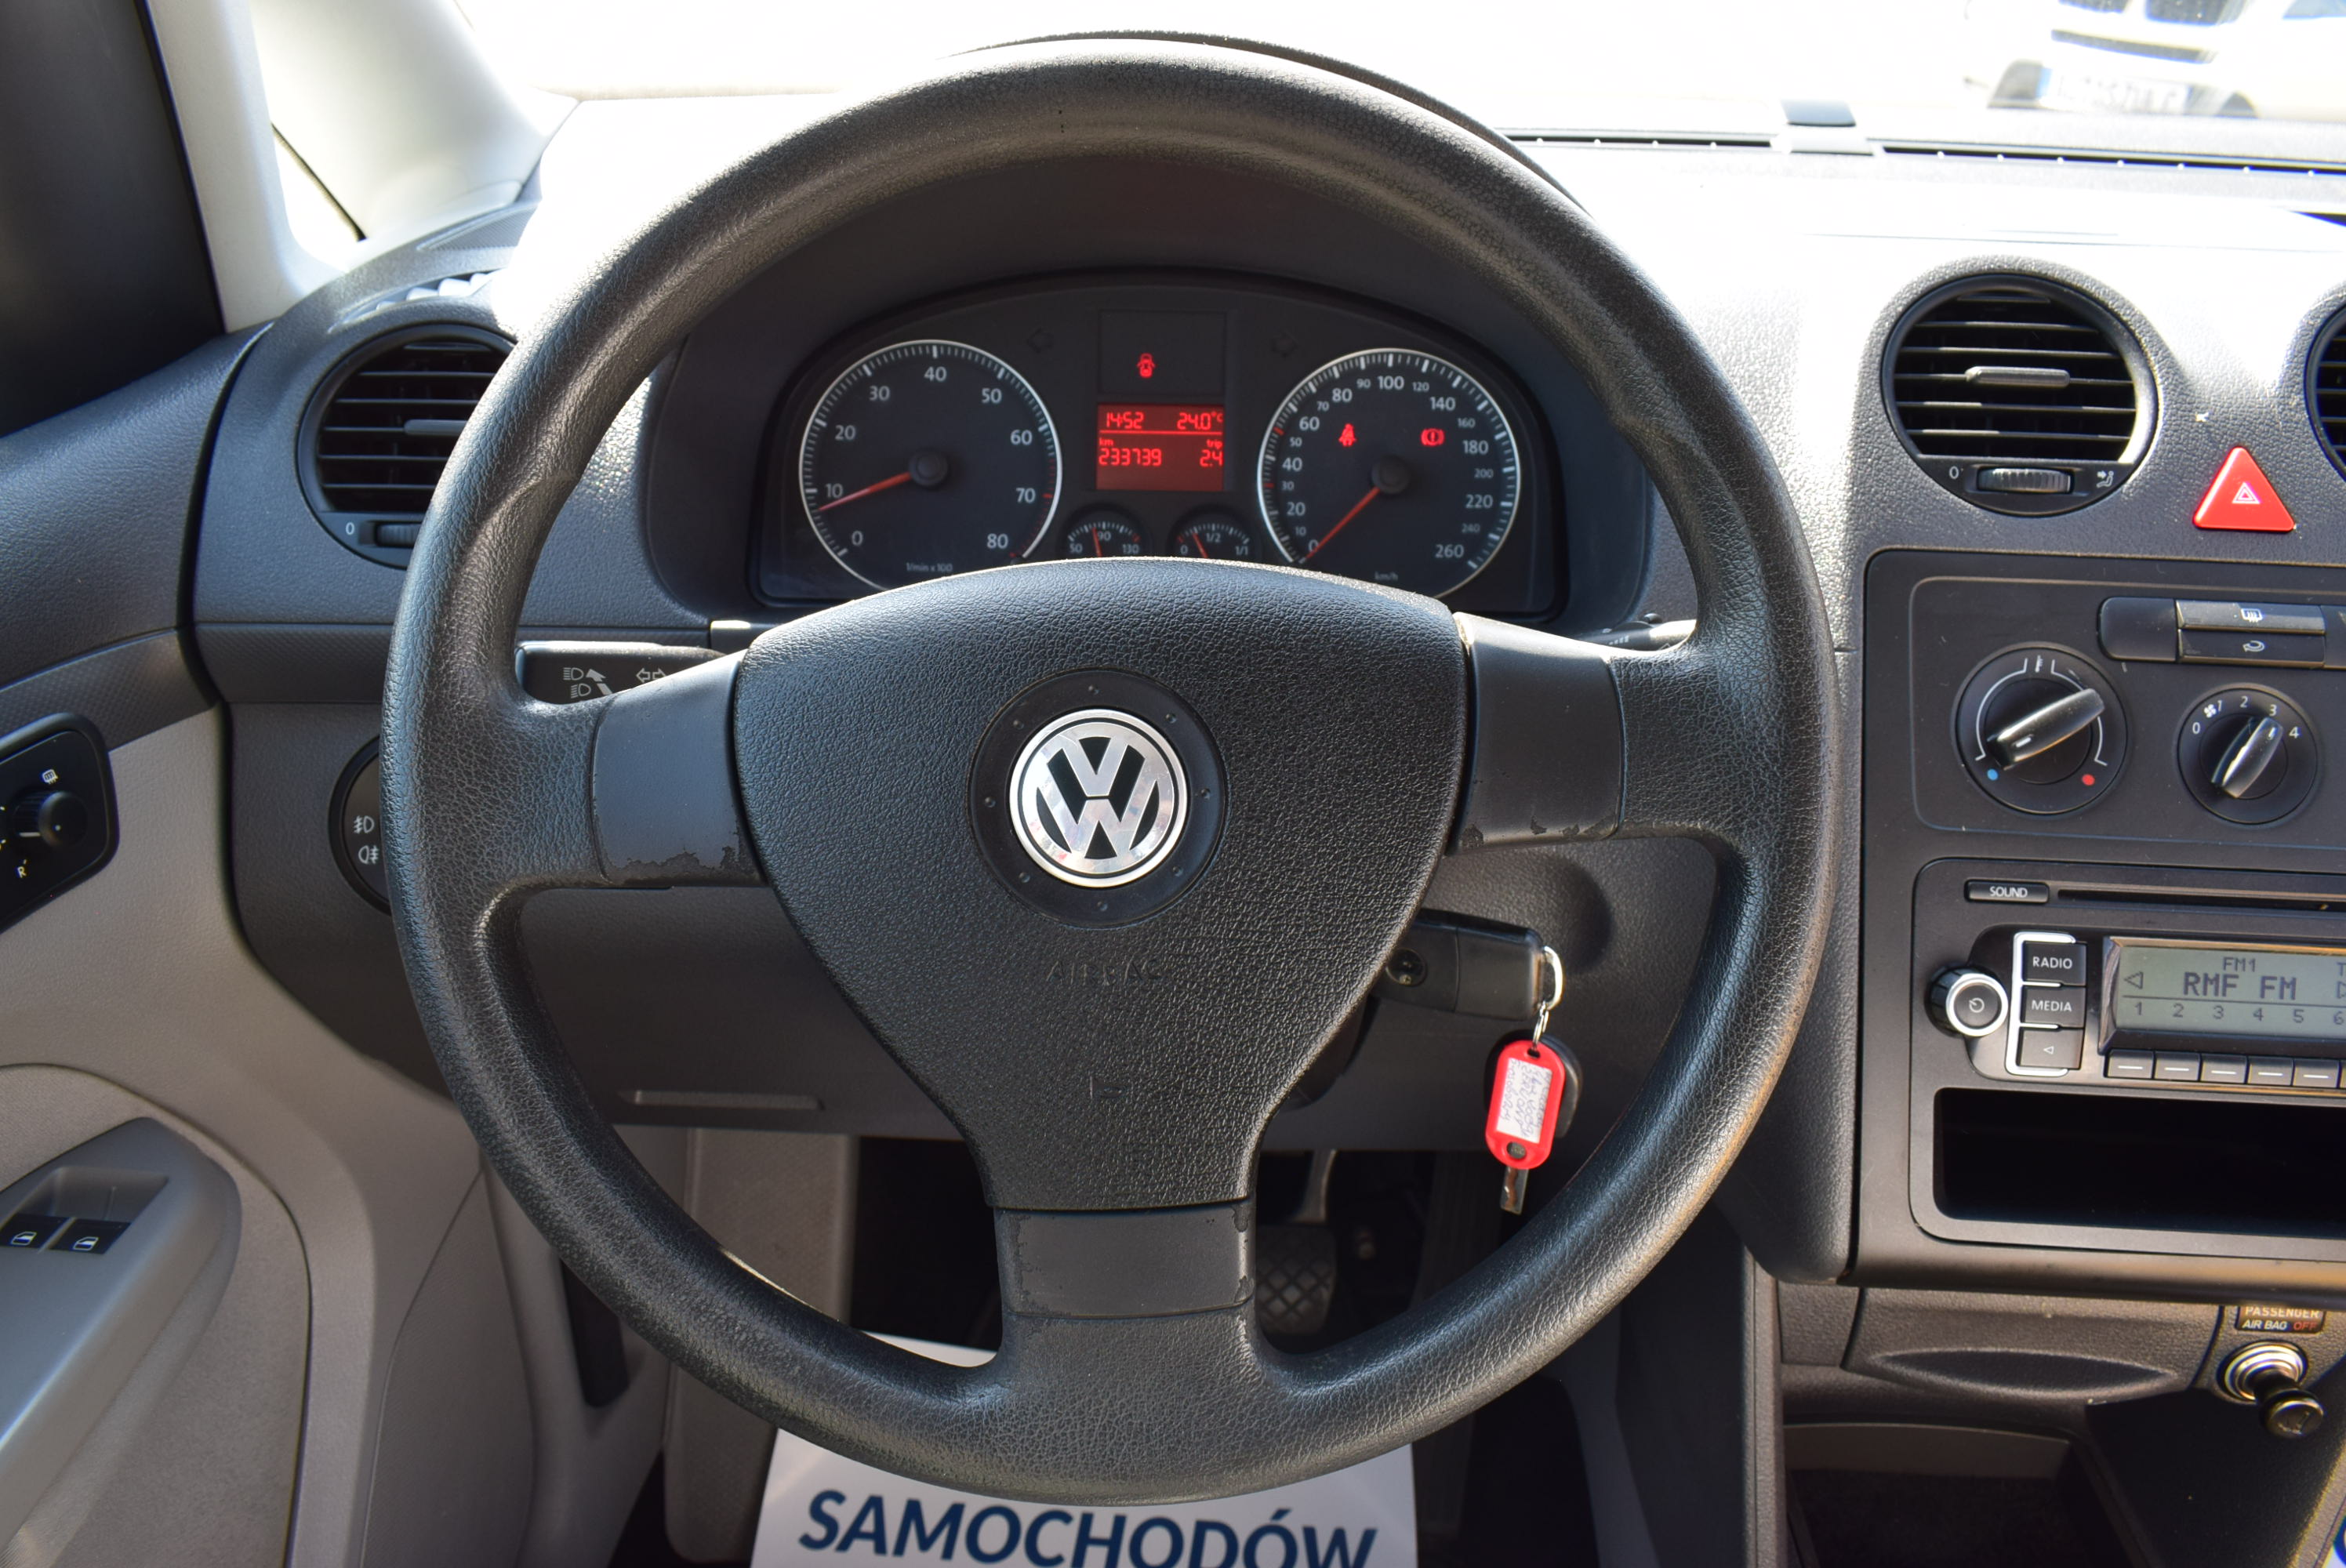 VW Caddy 1.4 Benzyna, 5-osobowy, Model : 2010, Prosty, tani w utrzymaniu, Sprawny technicznie, Zadbany, Rok Gwarancji full